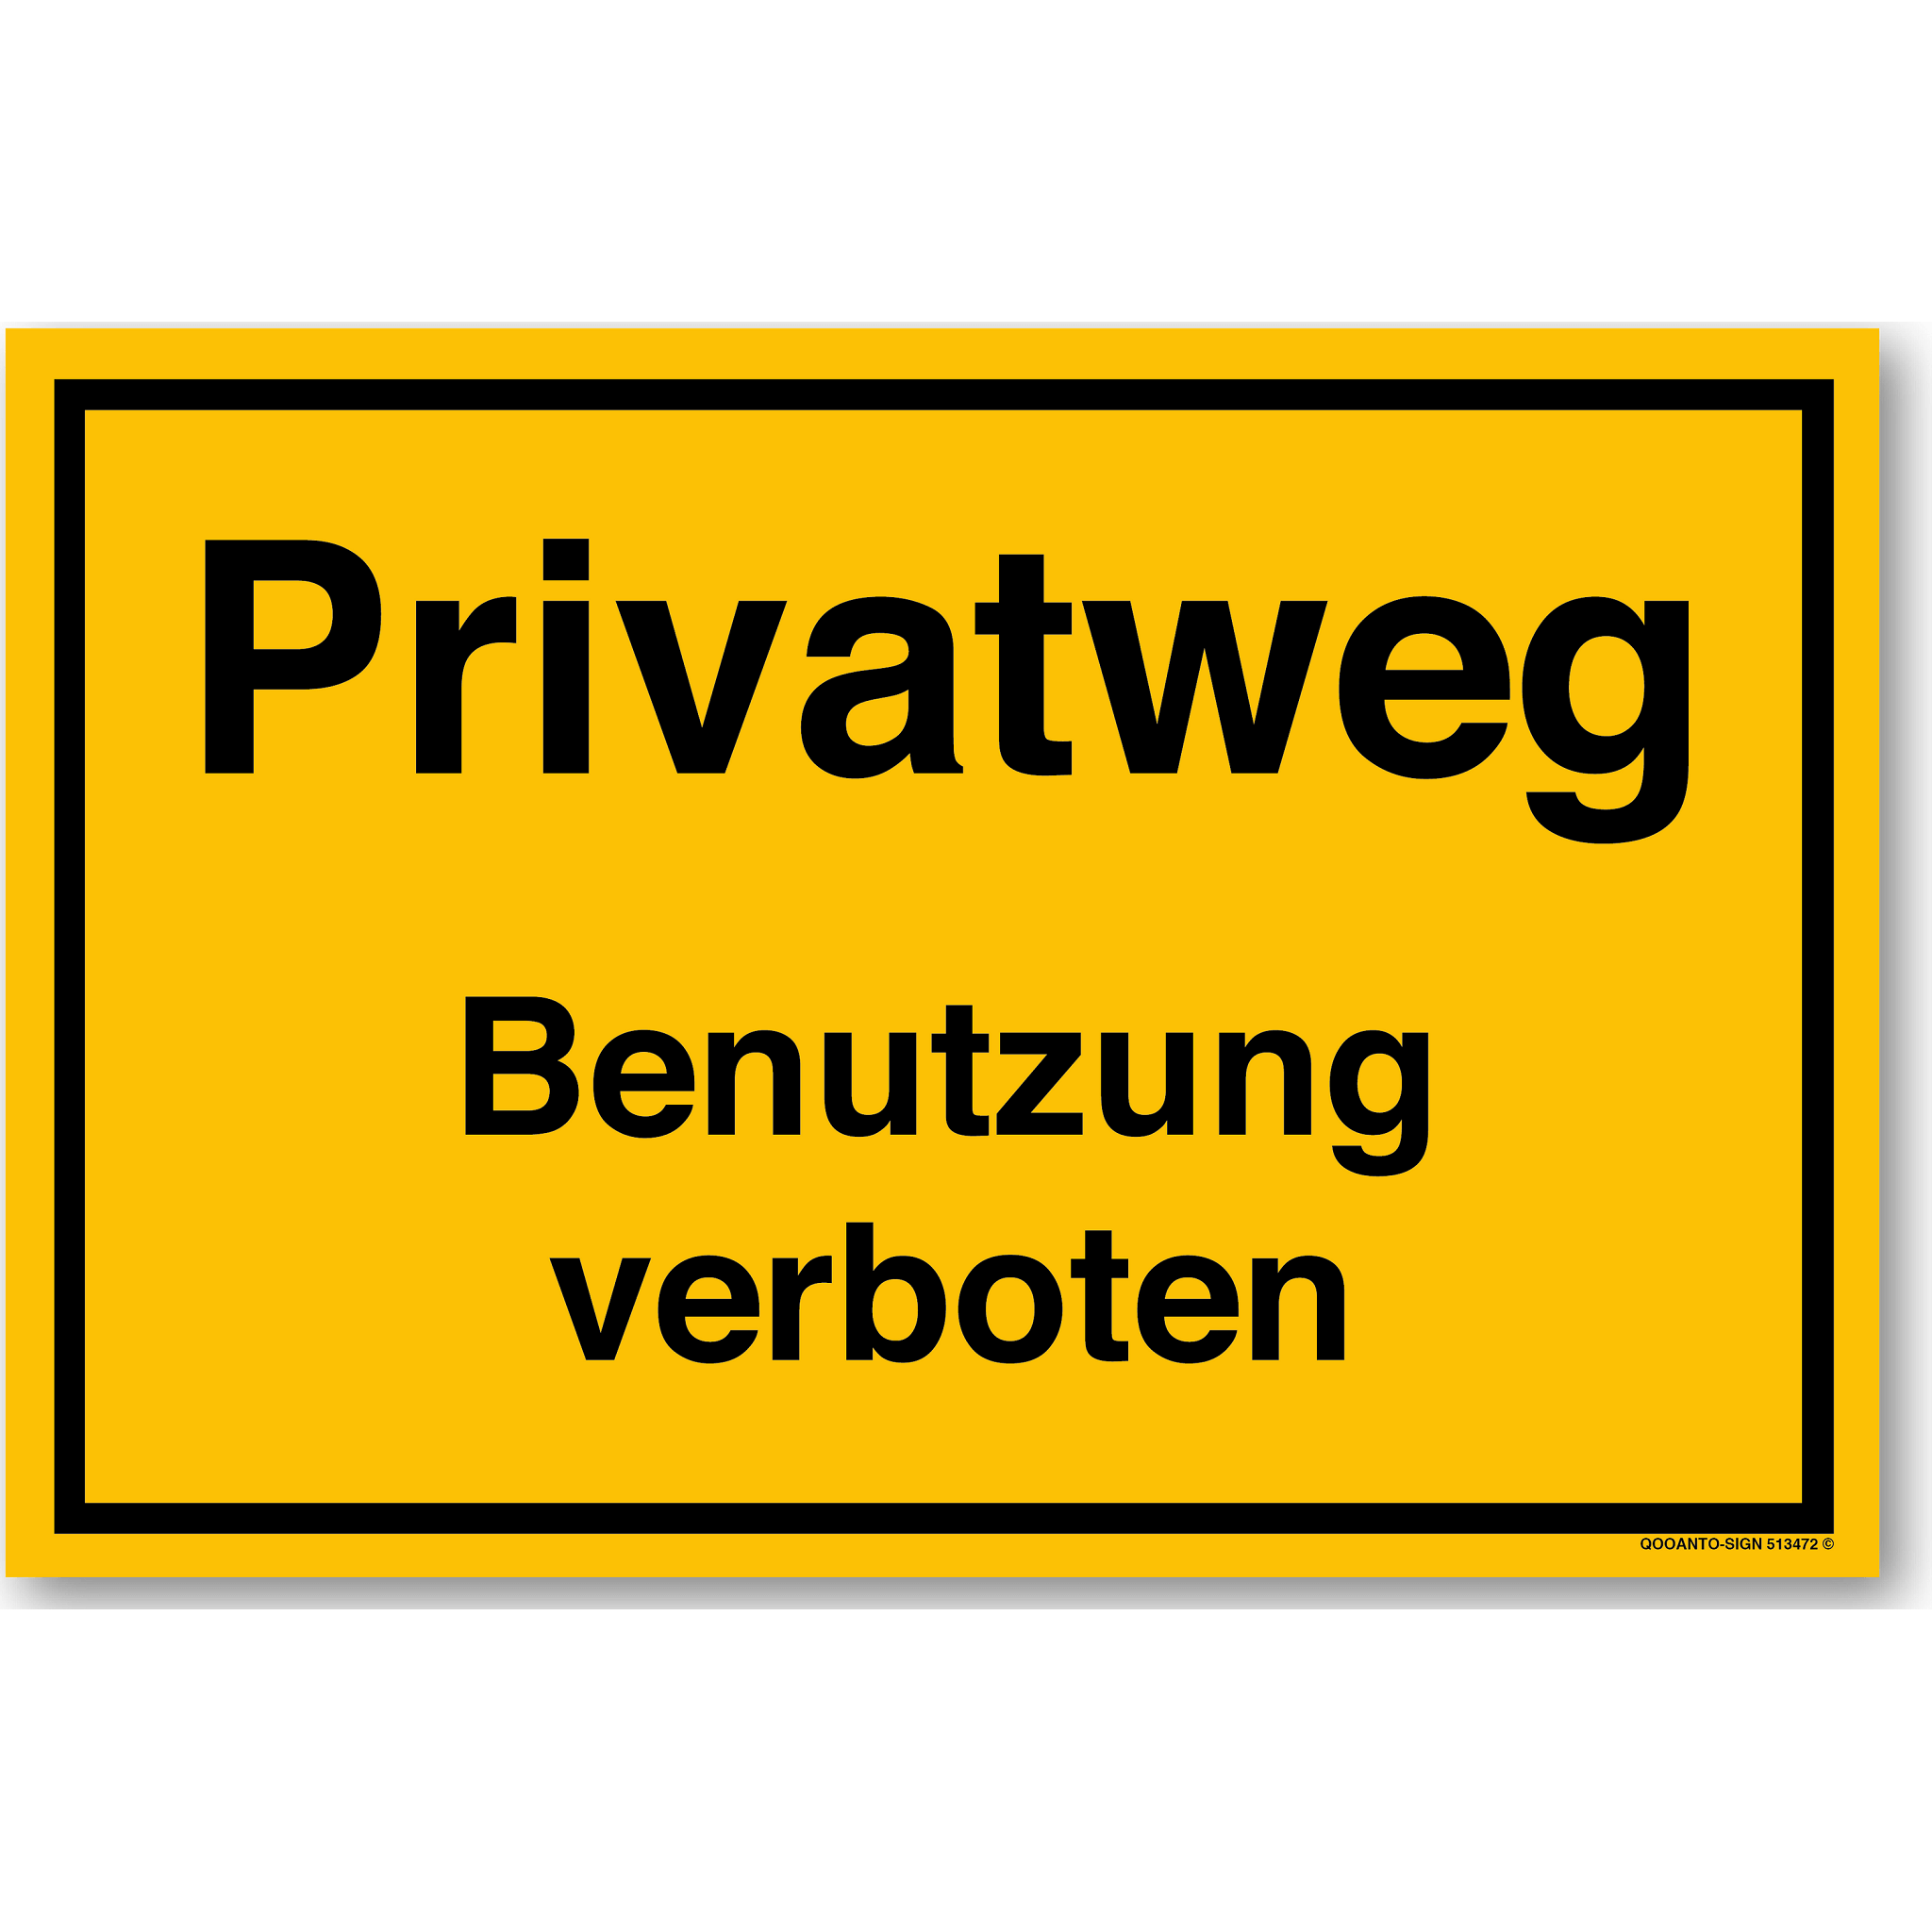 Privatweg Benutzung verboten, gelb, Schild oder Aufkleber